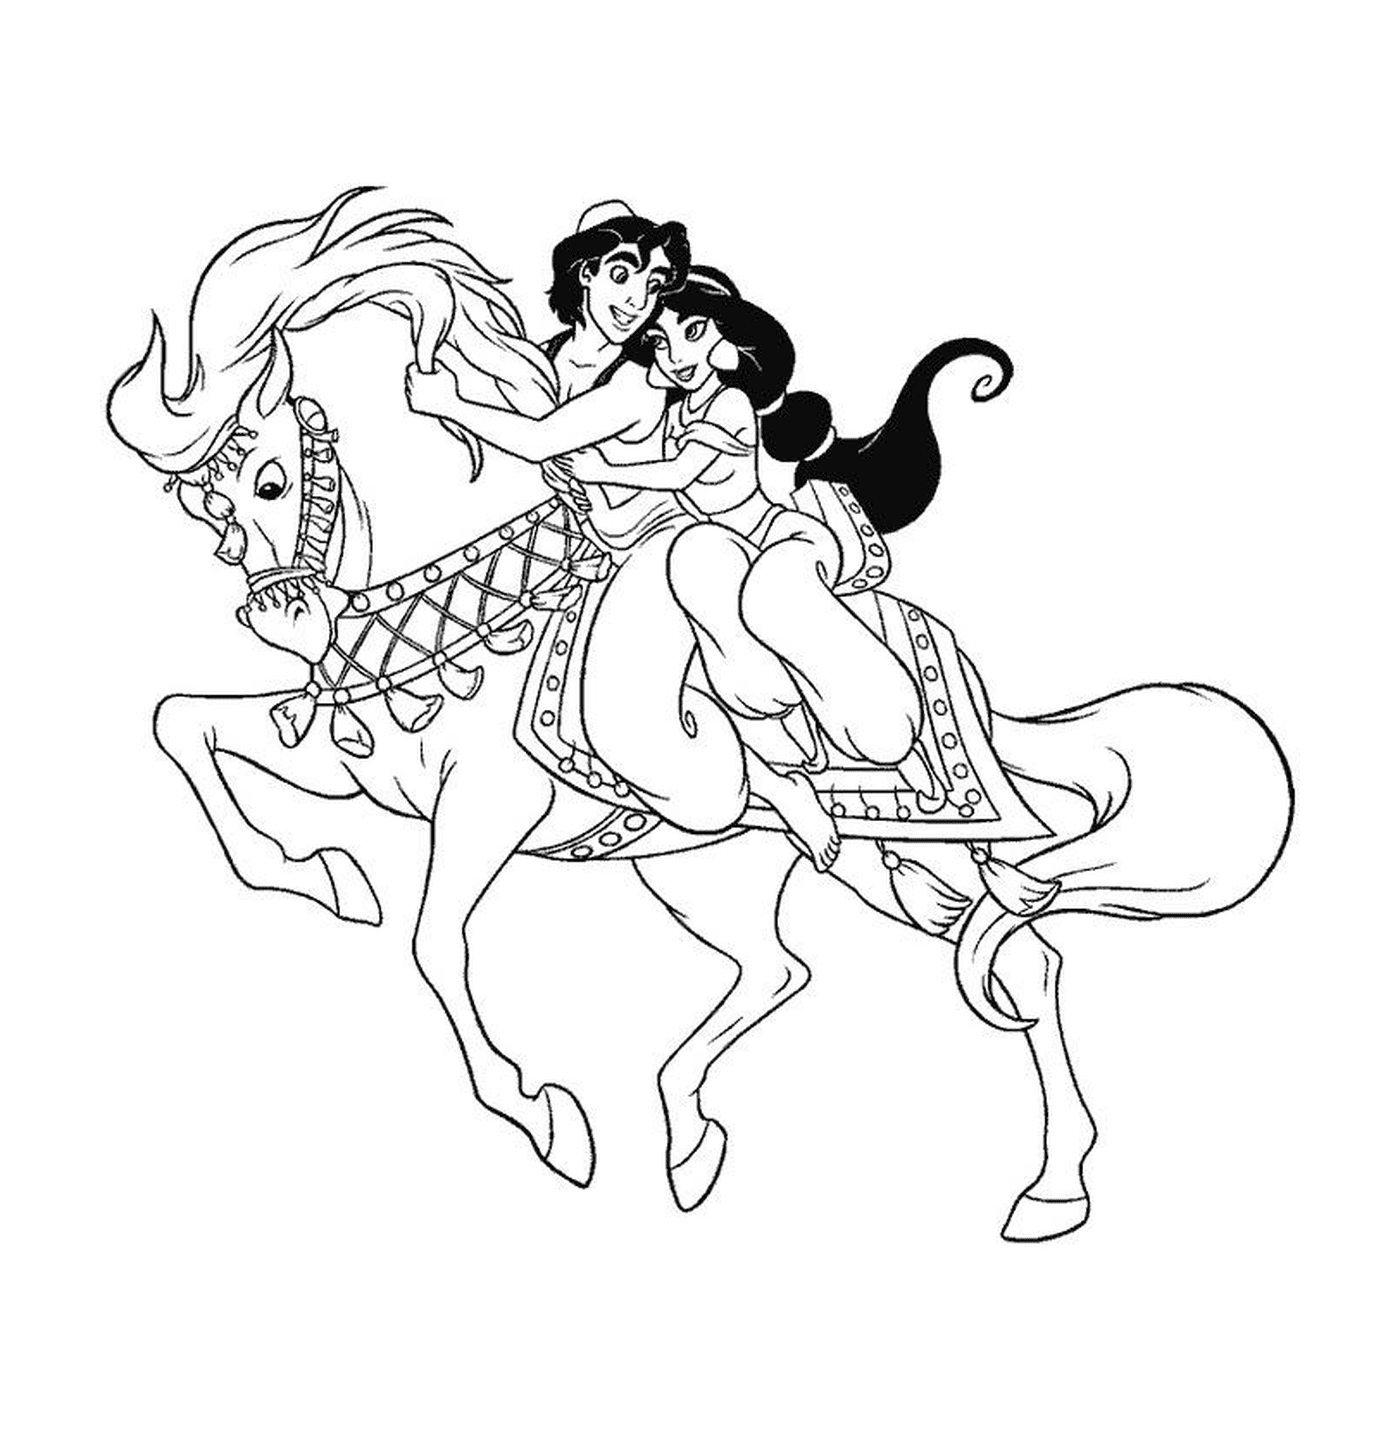  Aladdin und Jasmine auf einem Pferd 